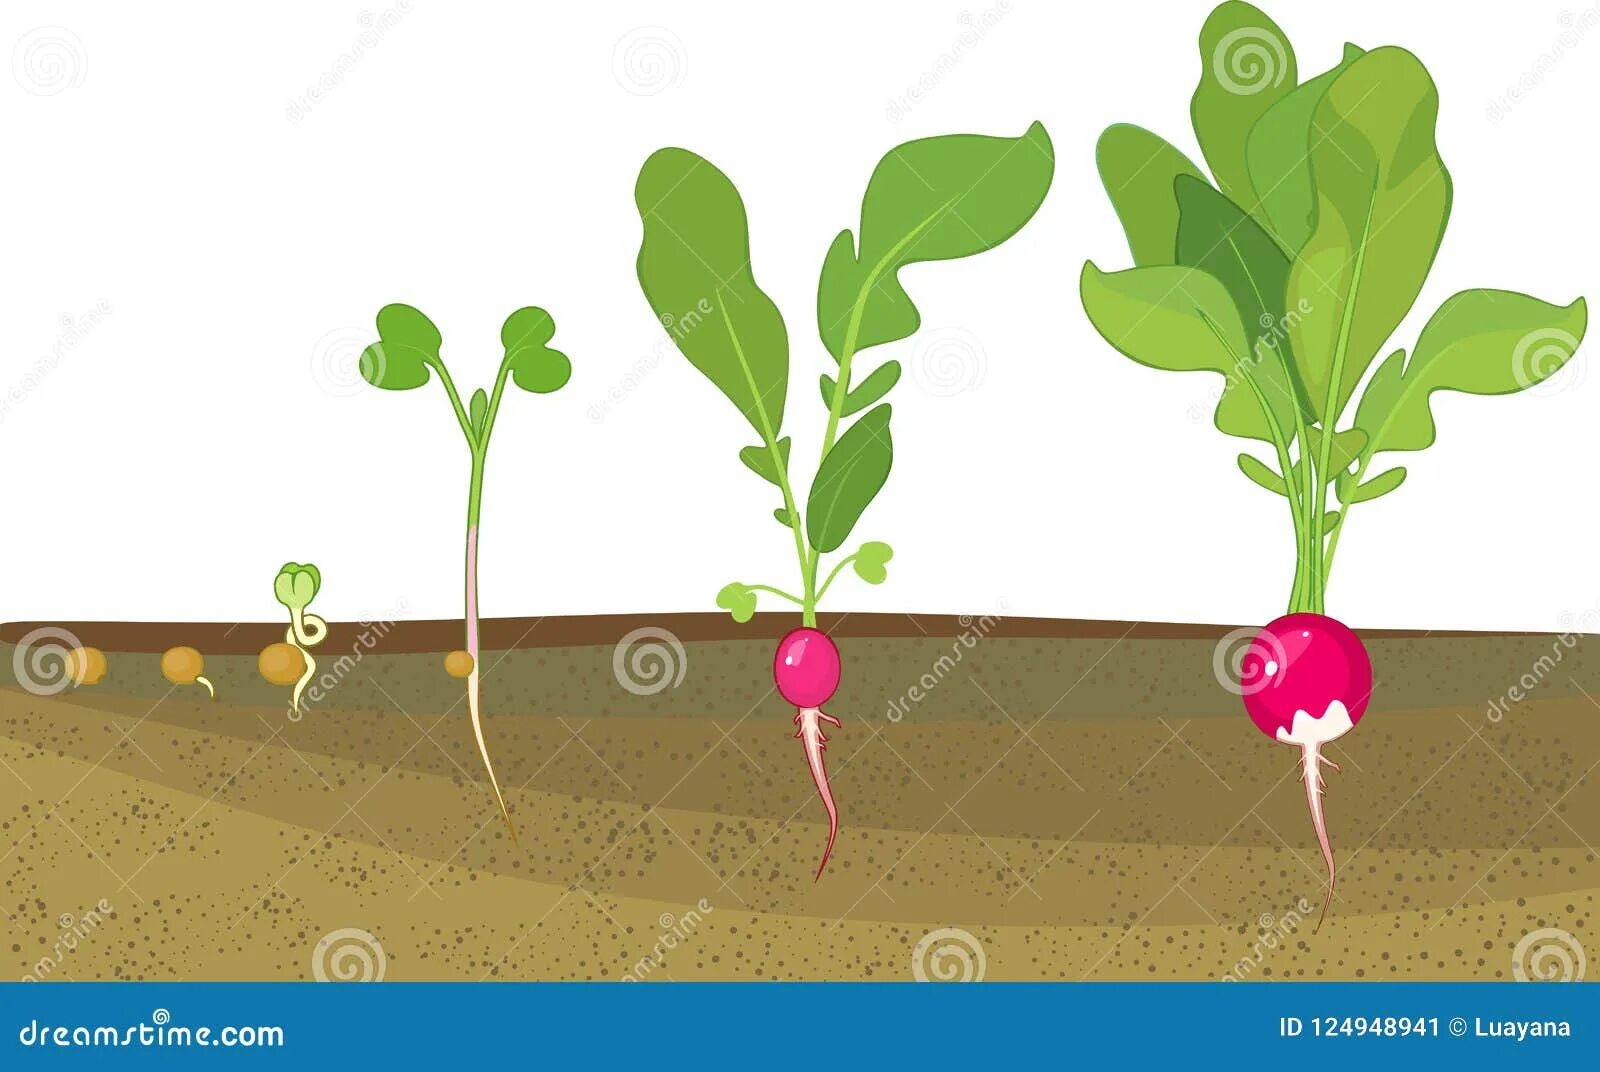 Этапы прорастания редиса. Проросток семени редиса. Этапы роста редиски. Этапы роста редиса для детей. Редиска рост